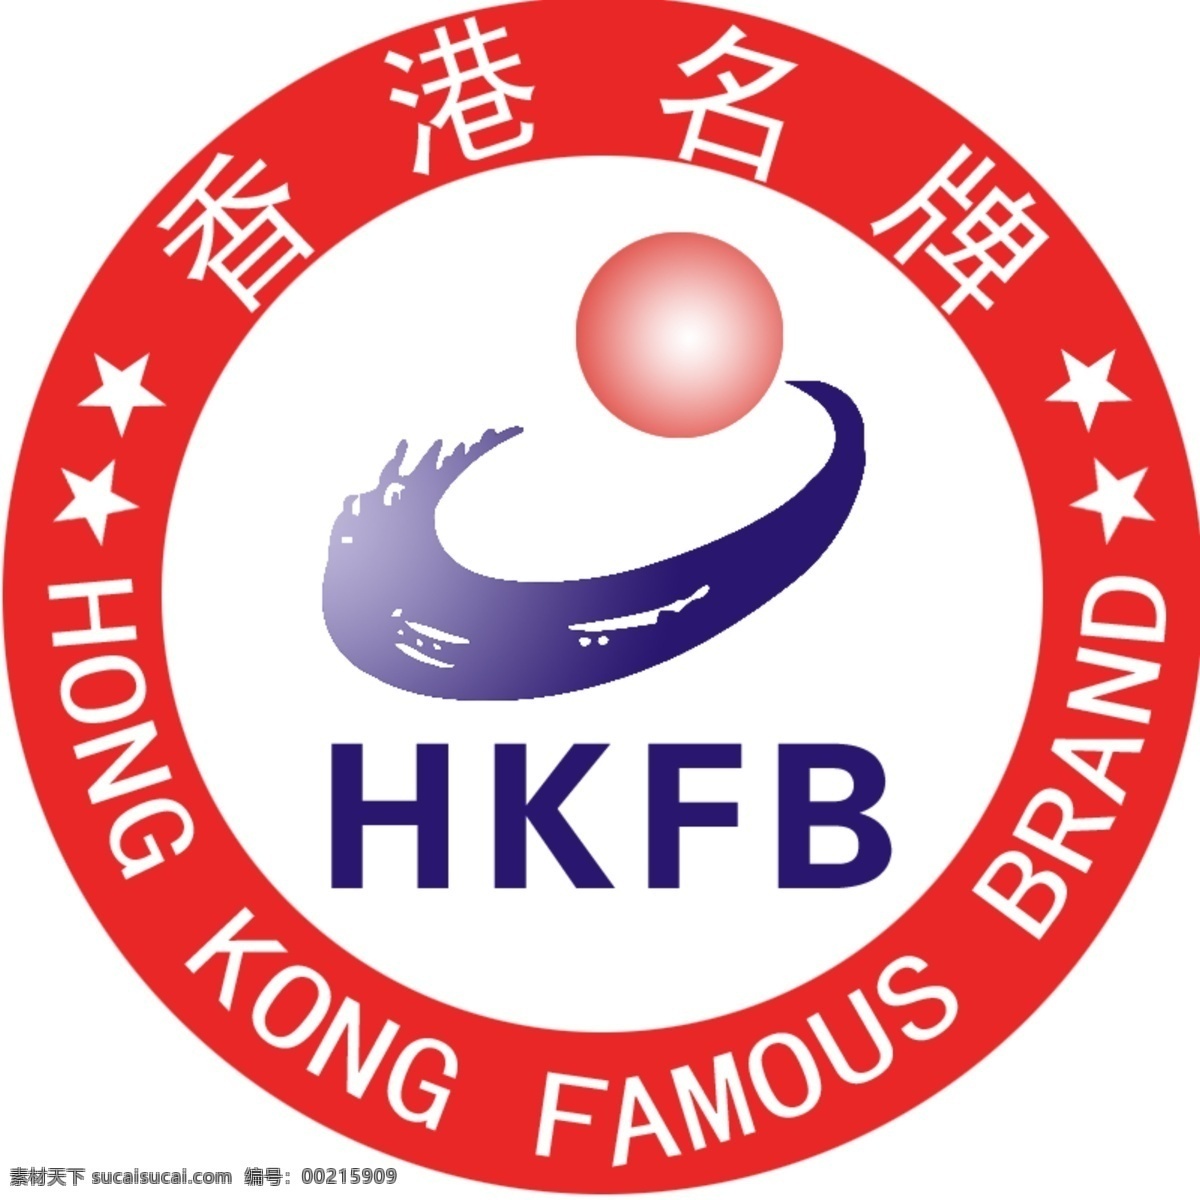 香港名牌 中国名牌 名牌标志 标志 香港名牌标志 中国名牌标志 白色